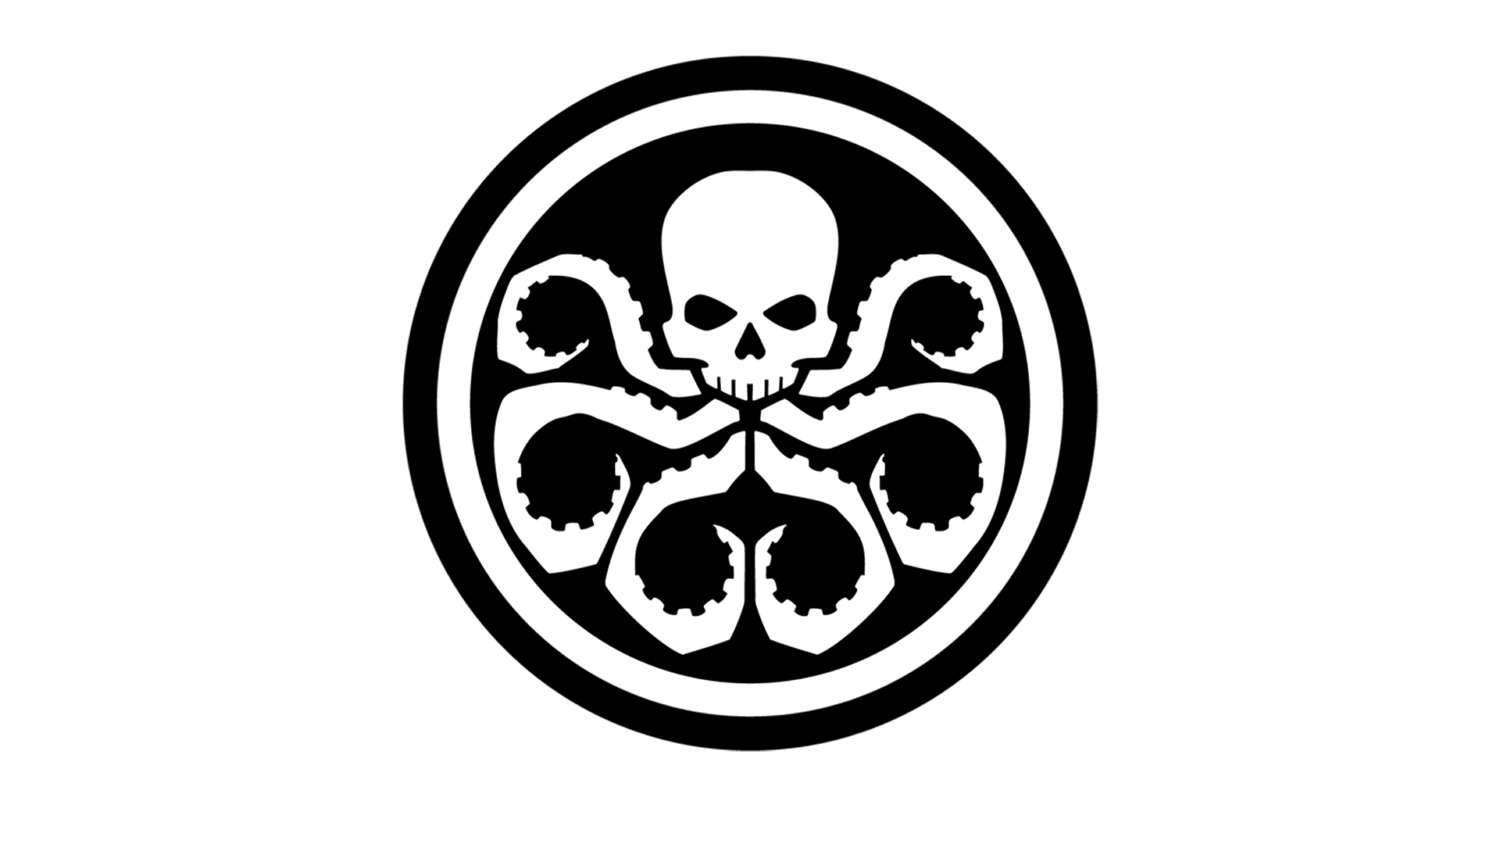 Hydra Logo - Hydra Logo Downloadable Cross Stitch Pattern PDF